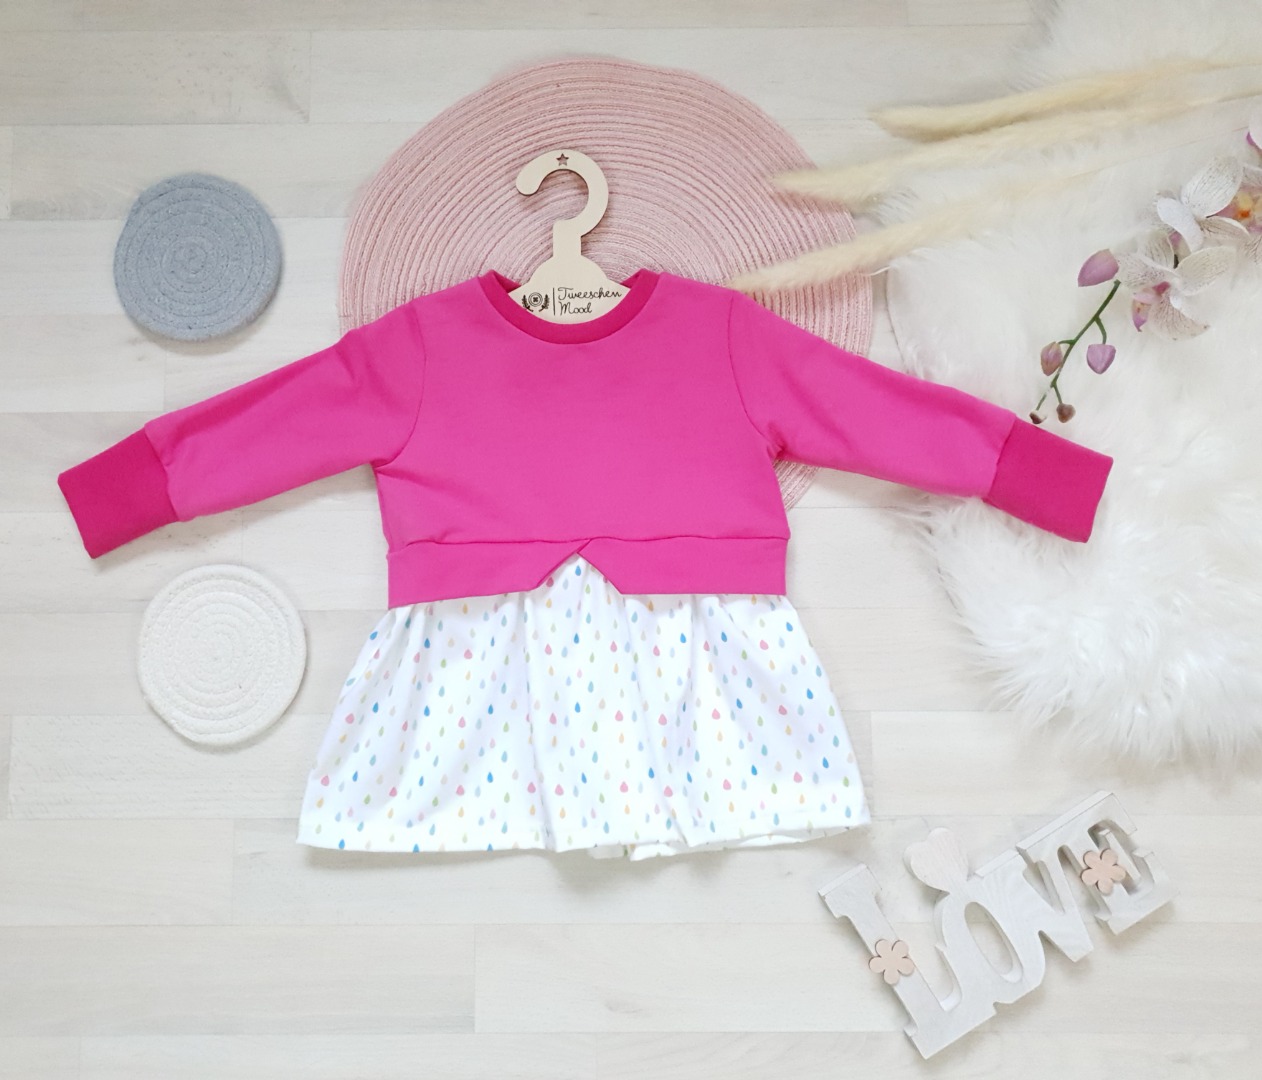 Sofortkauf Handmade Girlysweater Pinke Regentropfen Gr 92 Tweeschen Mood